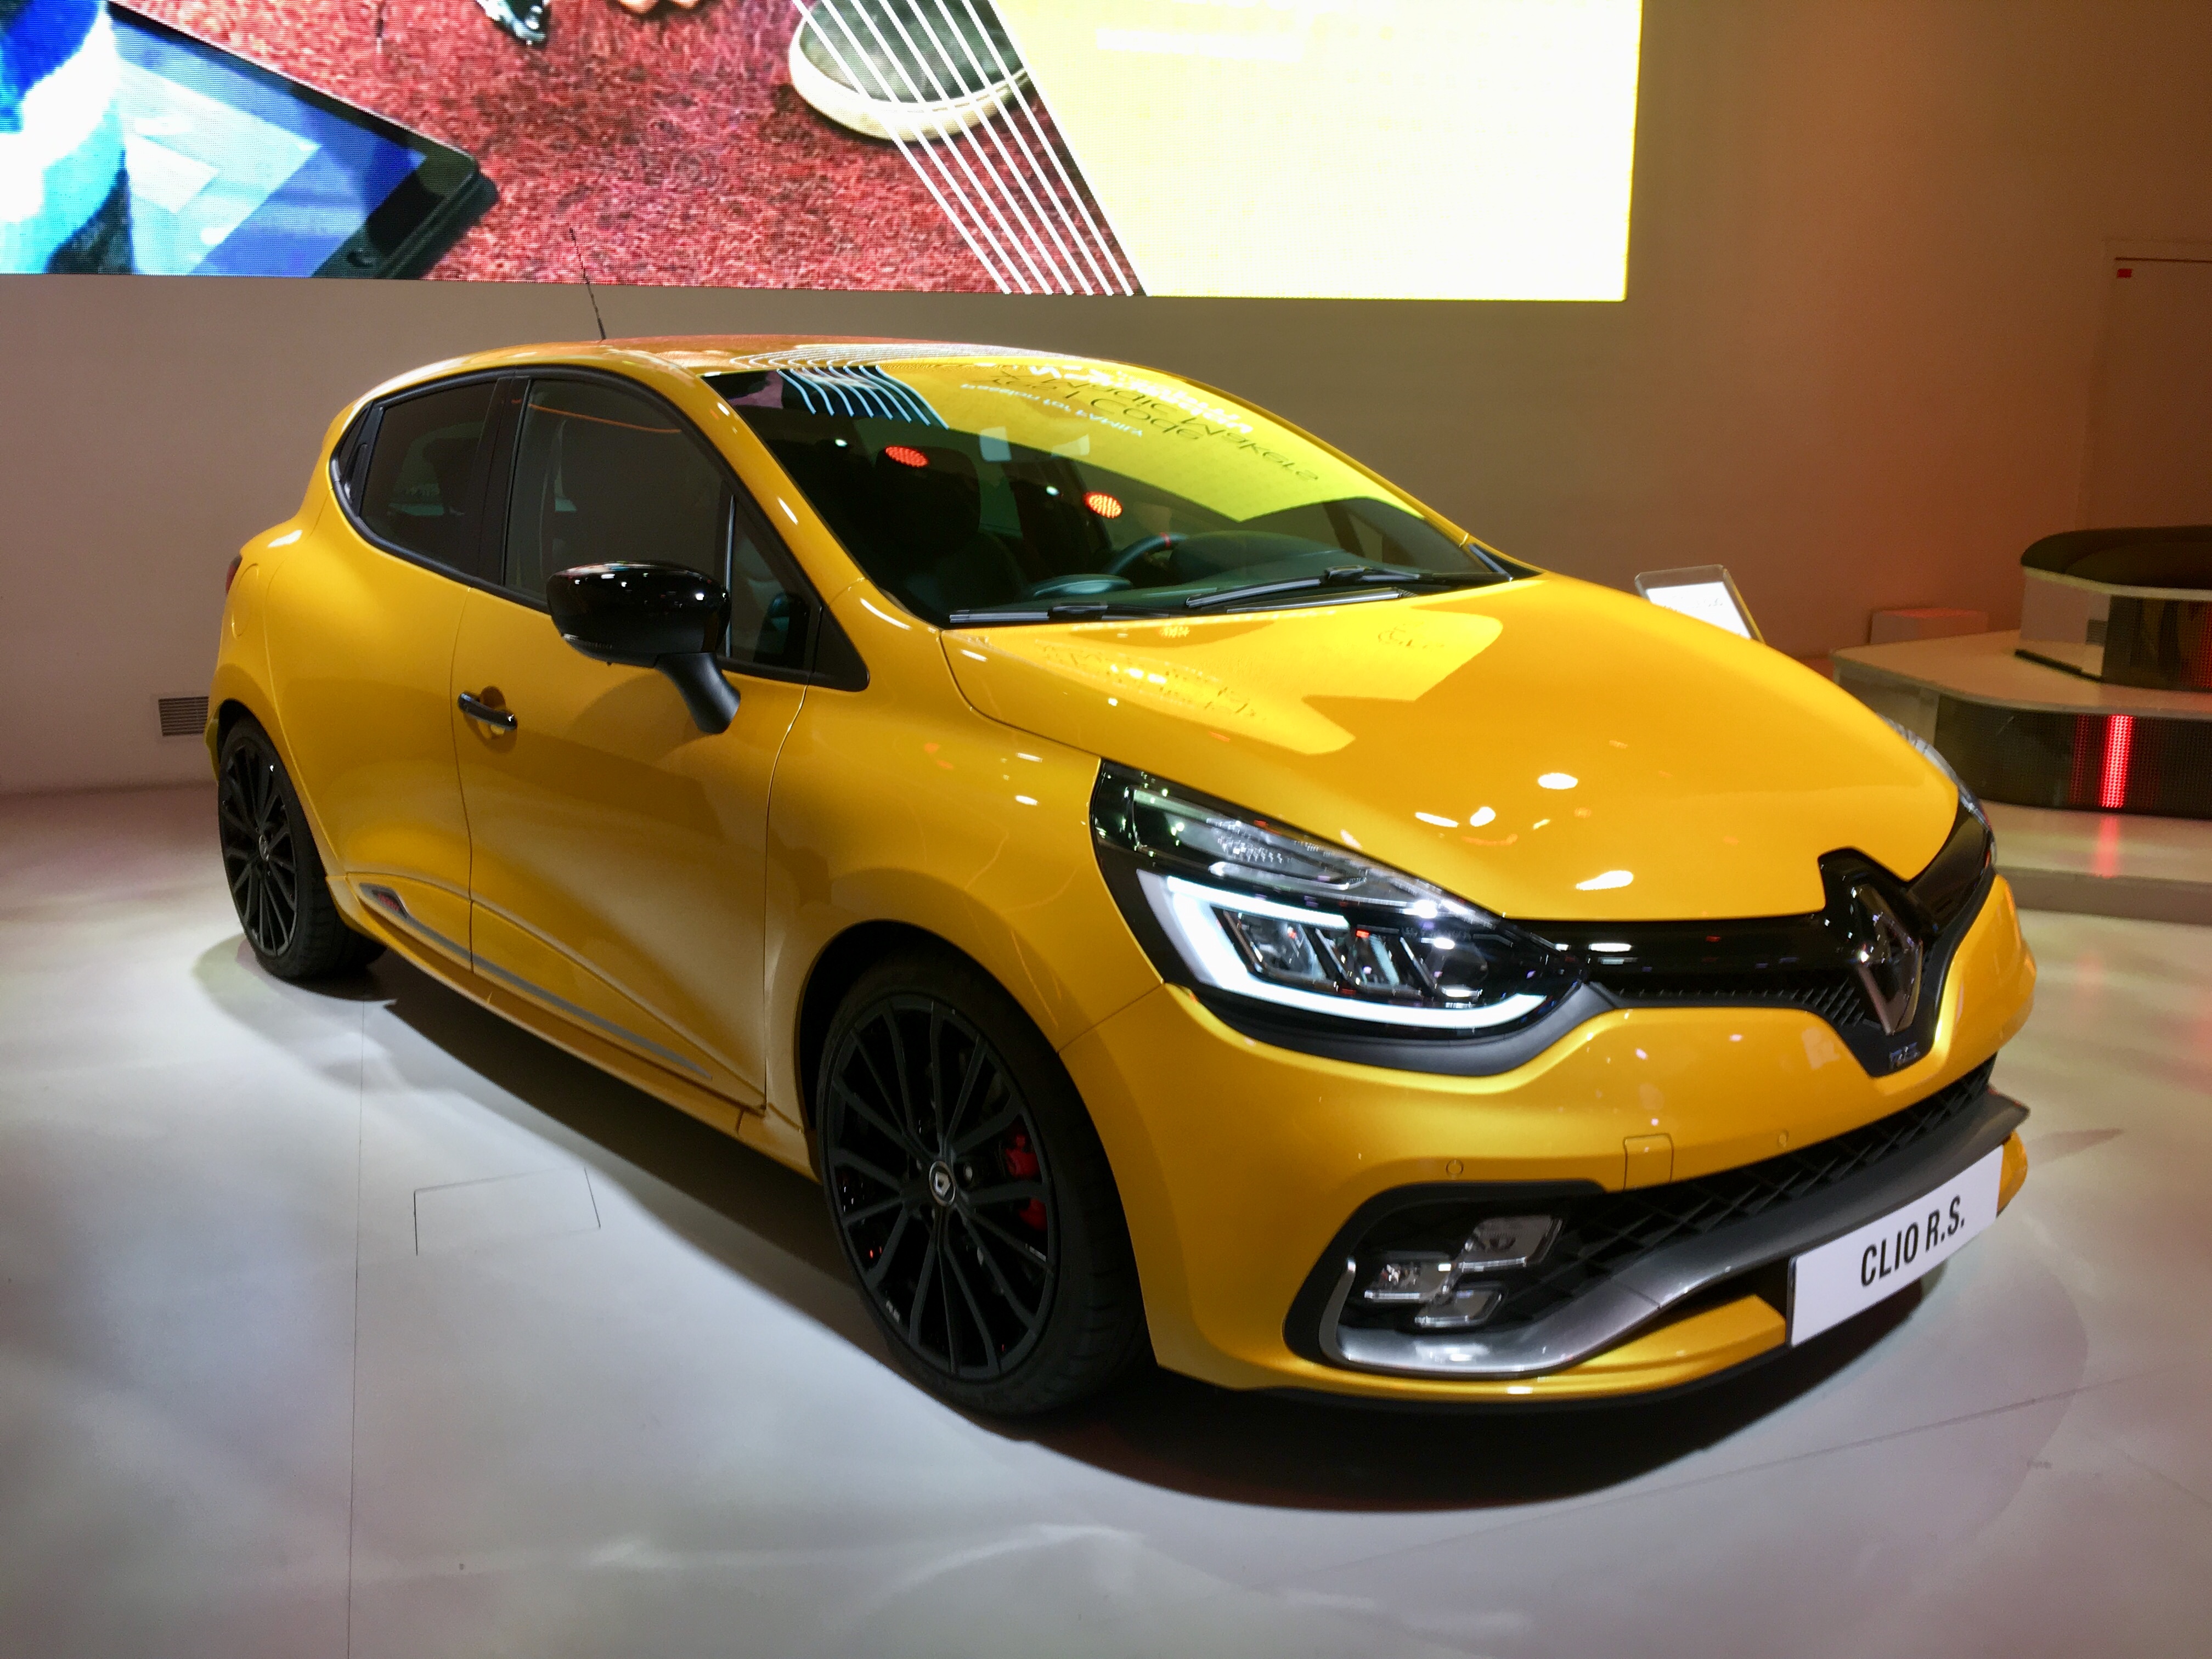 Renault Clio 5-door mod big